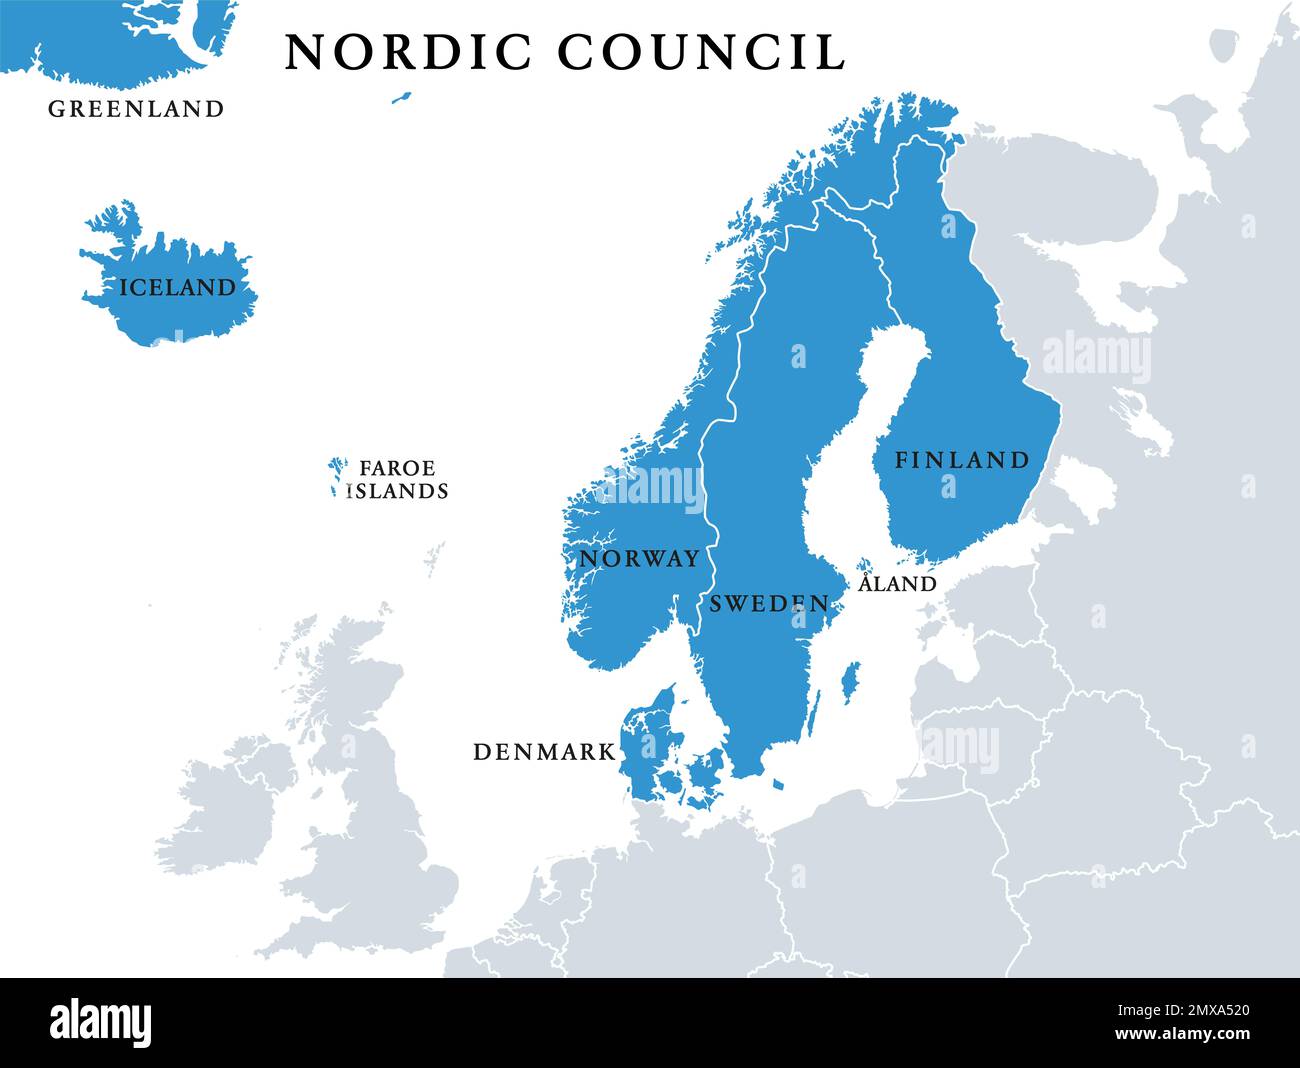 Mitglieder des Nordischen Rates, politische Karte. Zusammenarbeit zwischen Dänemark, Finnland, Island, Norwegen und Schweden, Grönland, Aland. Stockfoto